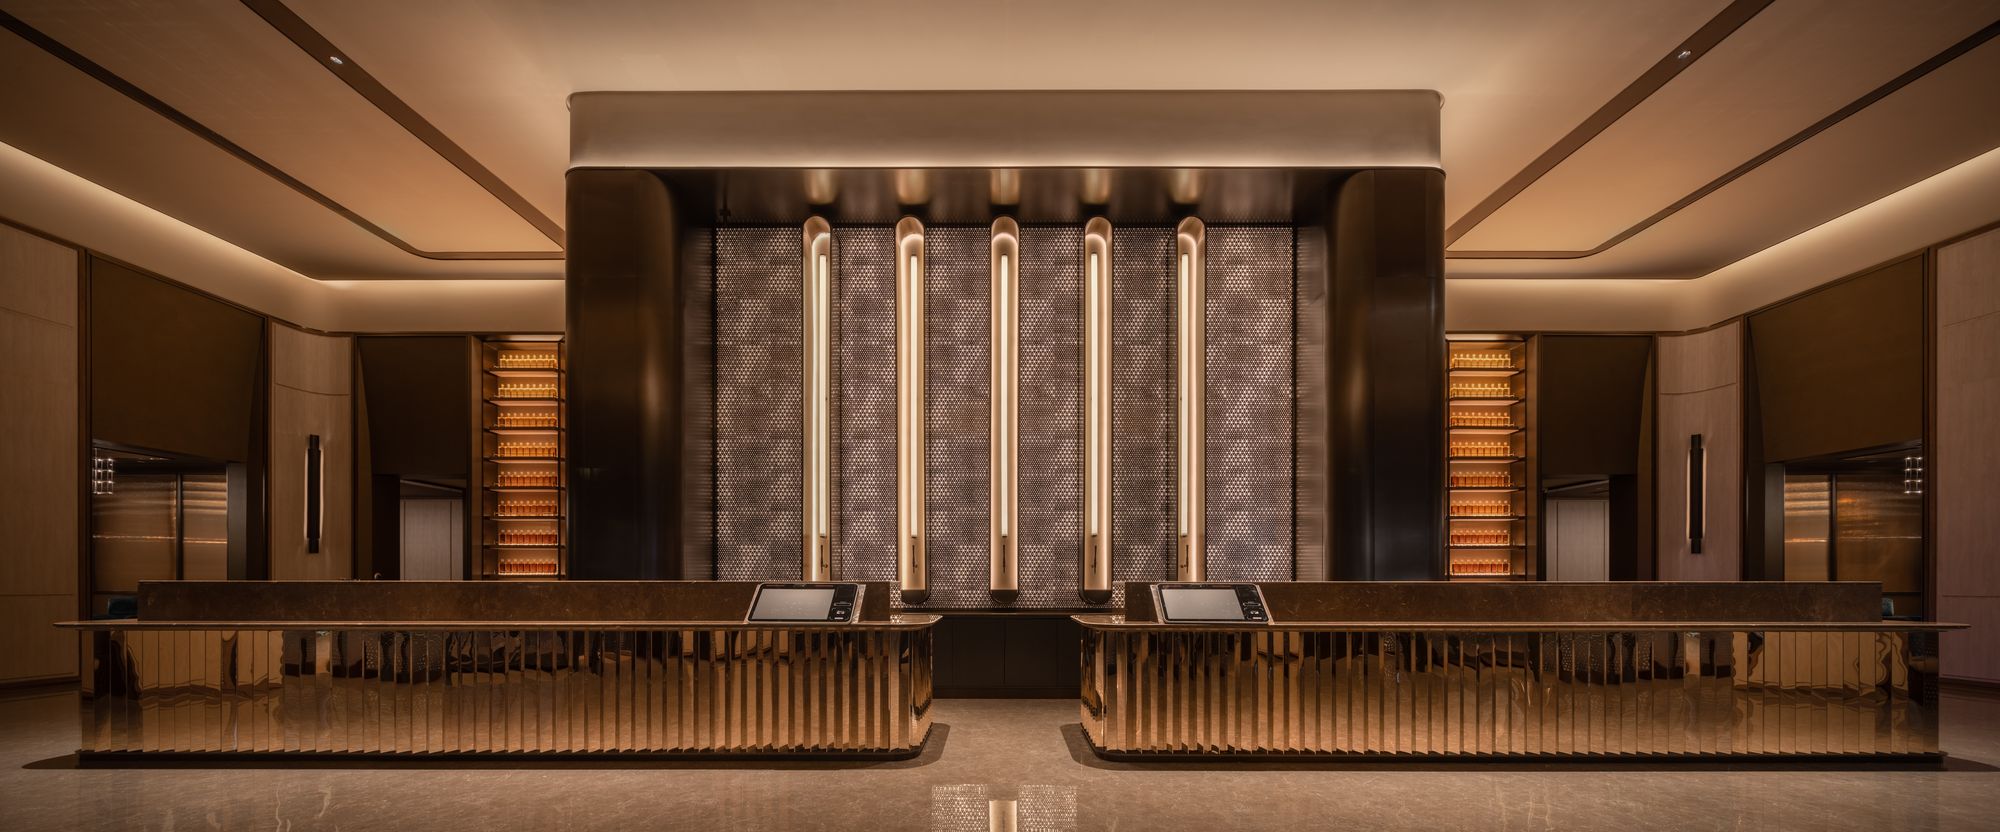 上海水晶橙酒店|ART-Arrakis | 建筑室内设计的创新与灵感